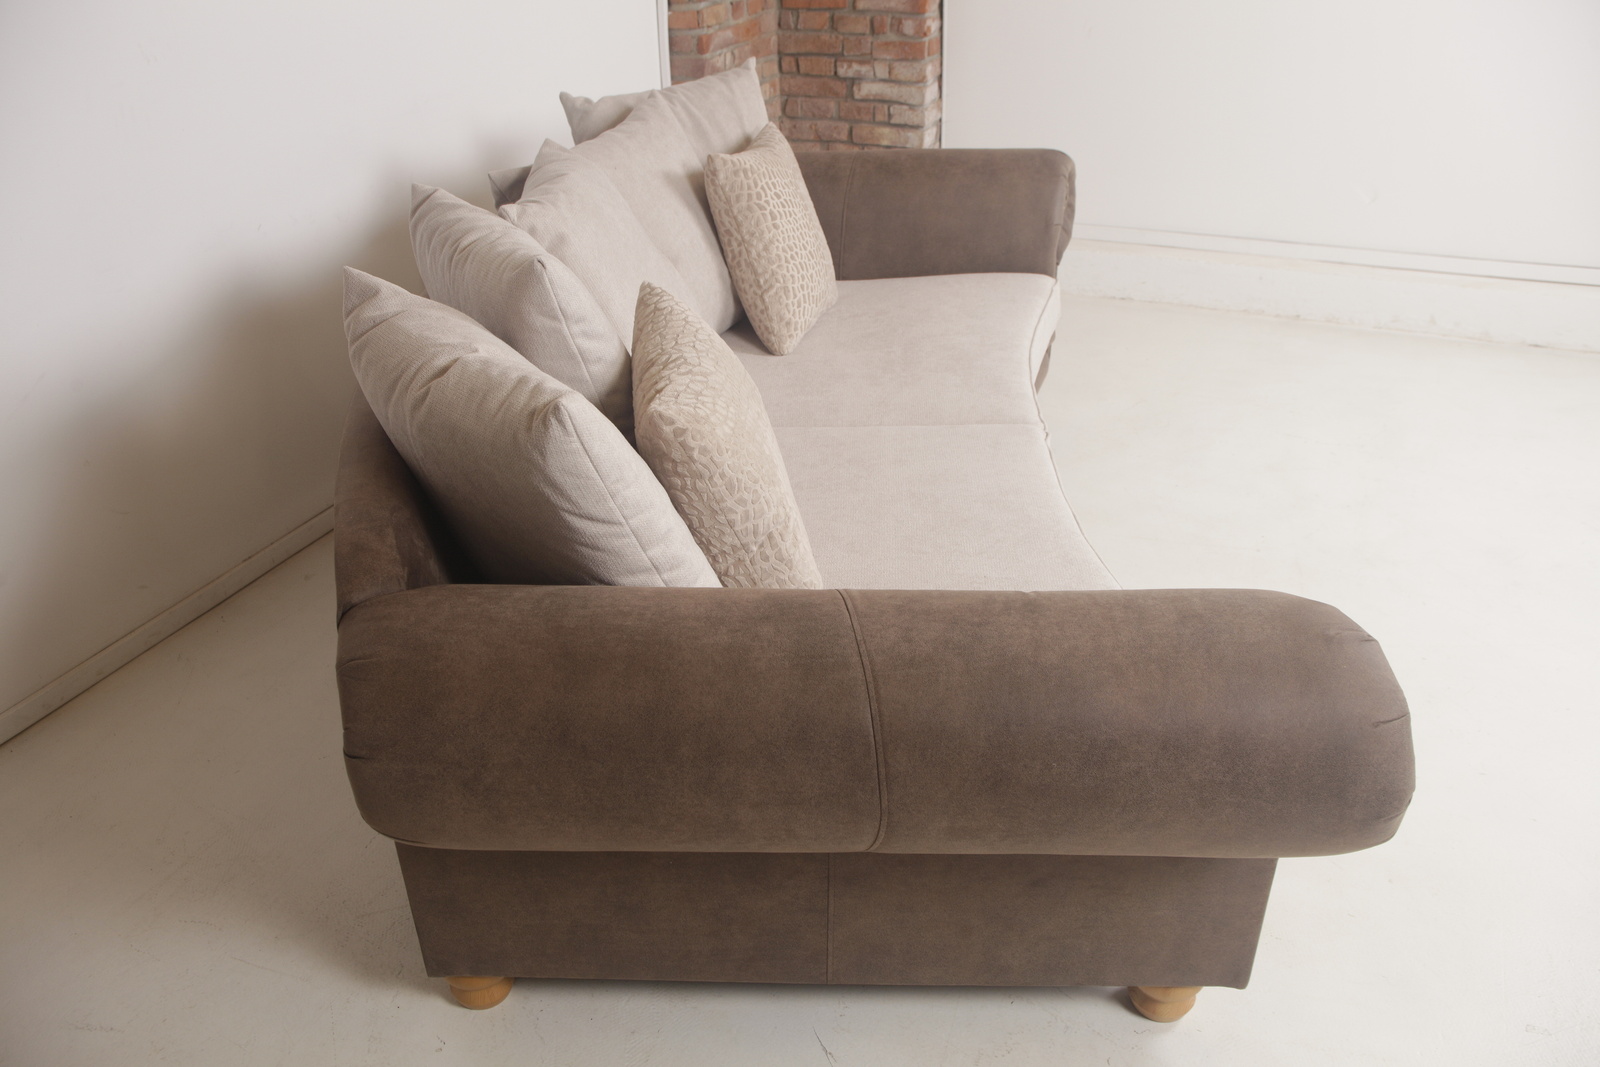 G859 chalet  pohovka sofa kvalitni kozena  gutmann factory   mg 9865